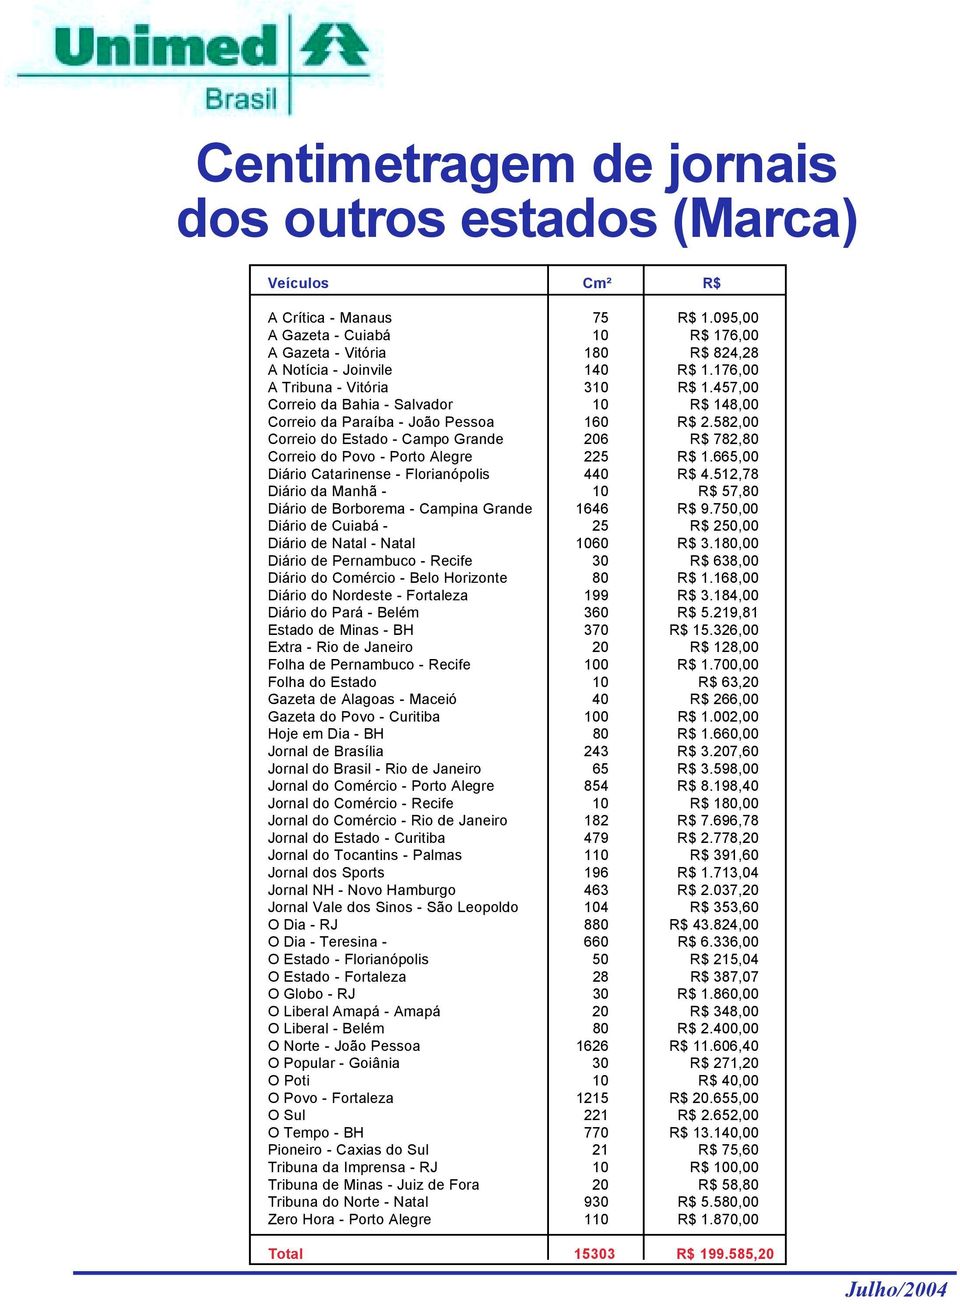 582,00 Correio do Estado - Campo Grande 206 R$ 782,80 Correio do Povo - Porto Alegre 225 R$ 1.665,00 Diário Catarinense - Florianópolis 440 R$ 4.